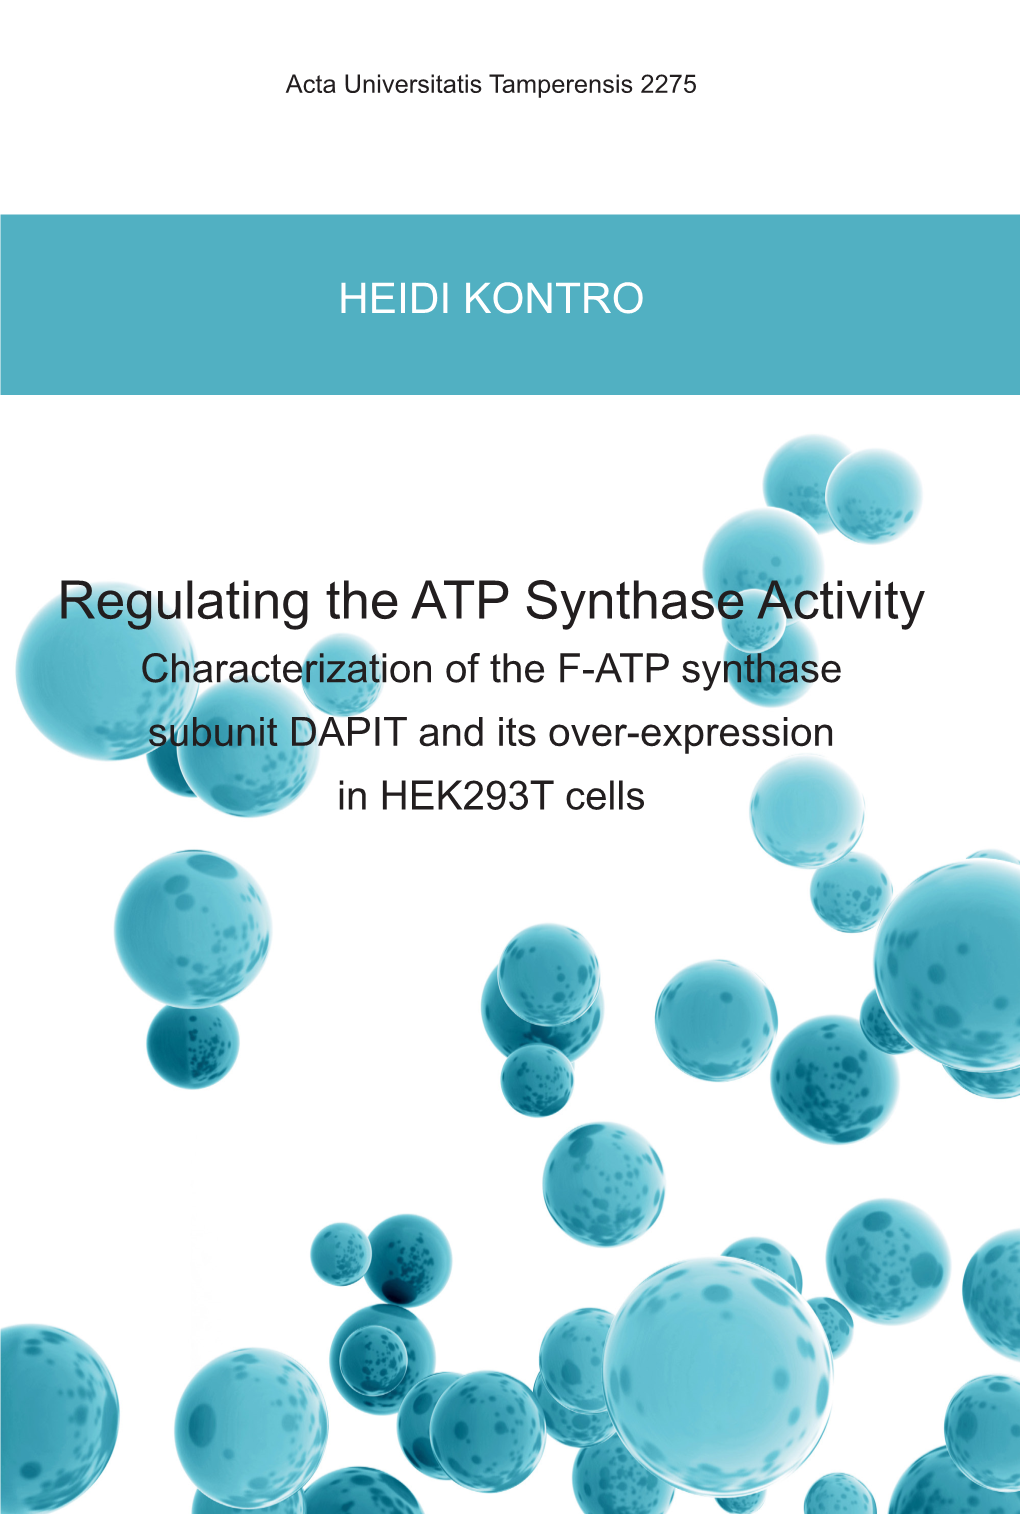 Regulating the ATP Synthase Activity Acta Universitatis Tamperensis 2275